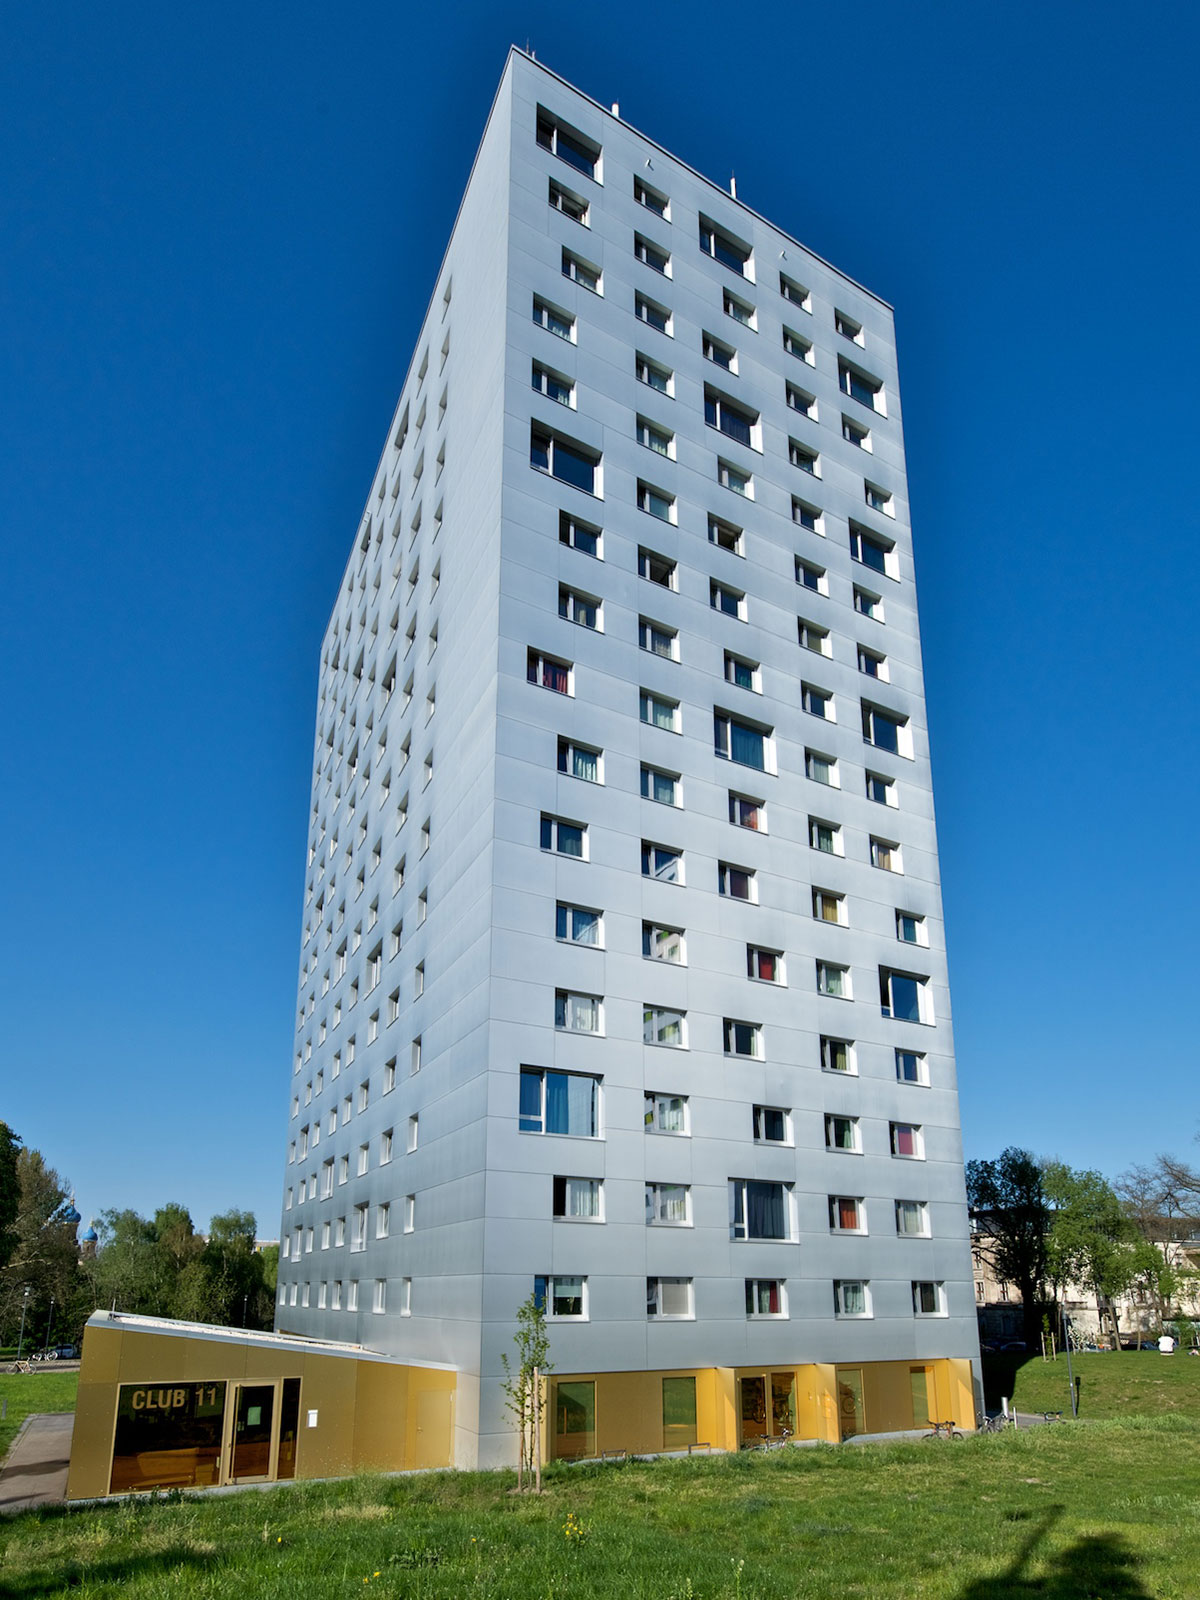 Auf der Abbildung befindet sich ein Hochhaus mit 16 Etagen, dessen Fassade mit den vielen Fenstern sehr hell und modern ist - das Wohnheim Hochschulstraße 48. Es gehört zum Ensemble der drei Wohnheime auf der Hochschulstraße, in denen insgesamt ca. 920 Studenten Platz finden.